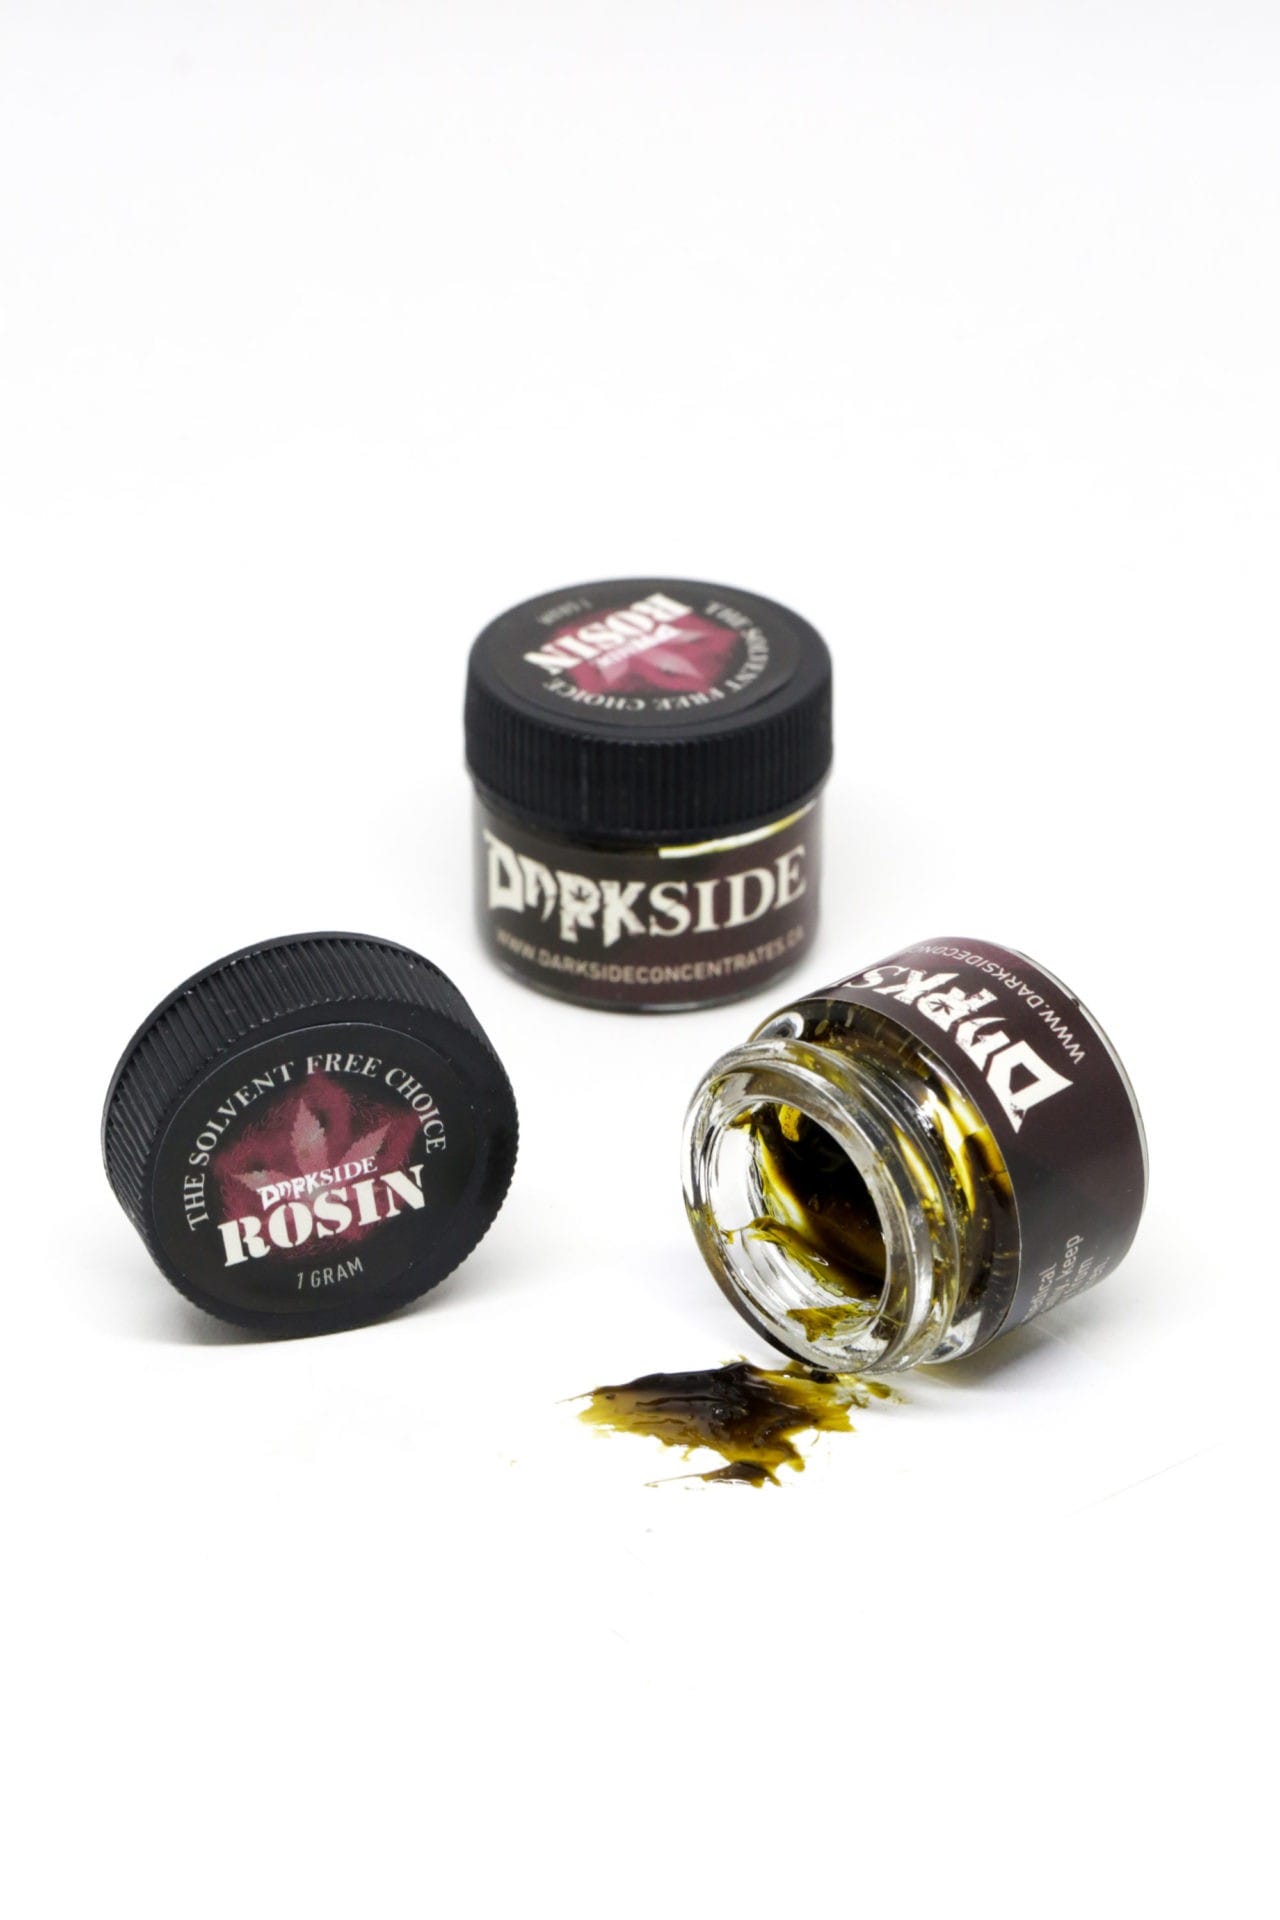 GrassLife - Darkside Rosin (1 gram)